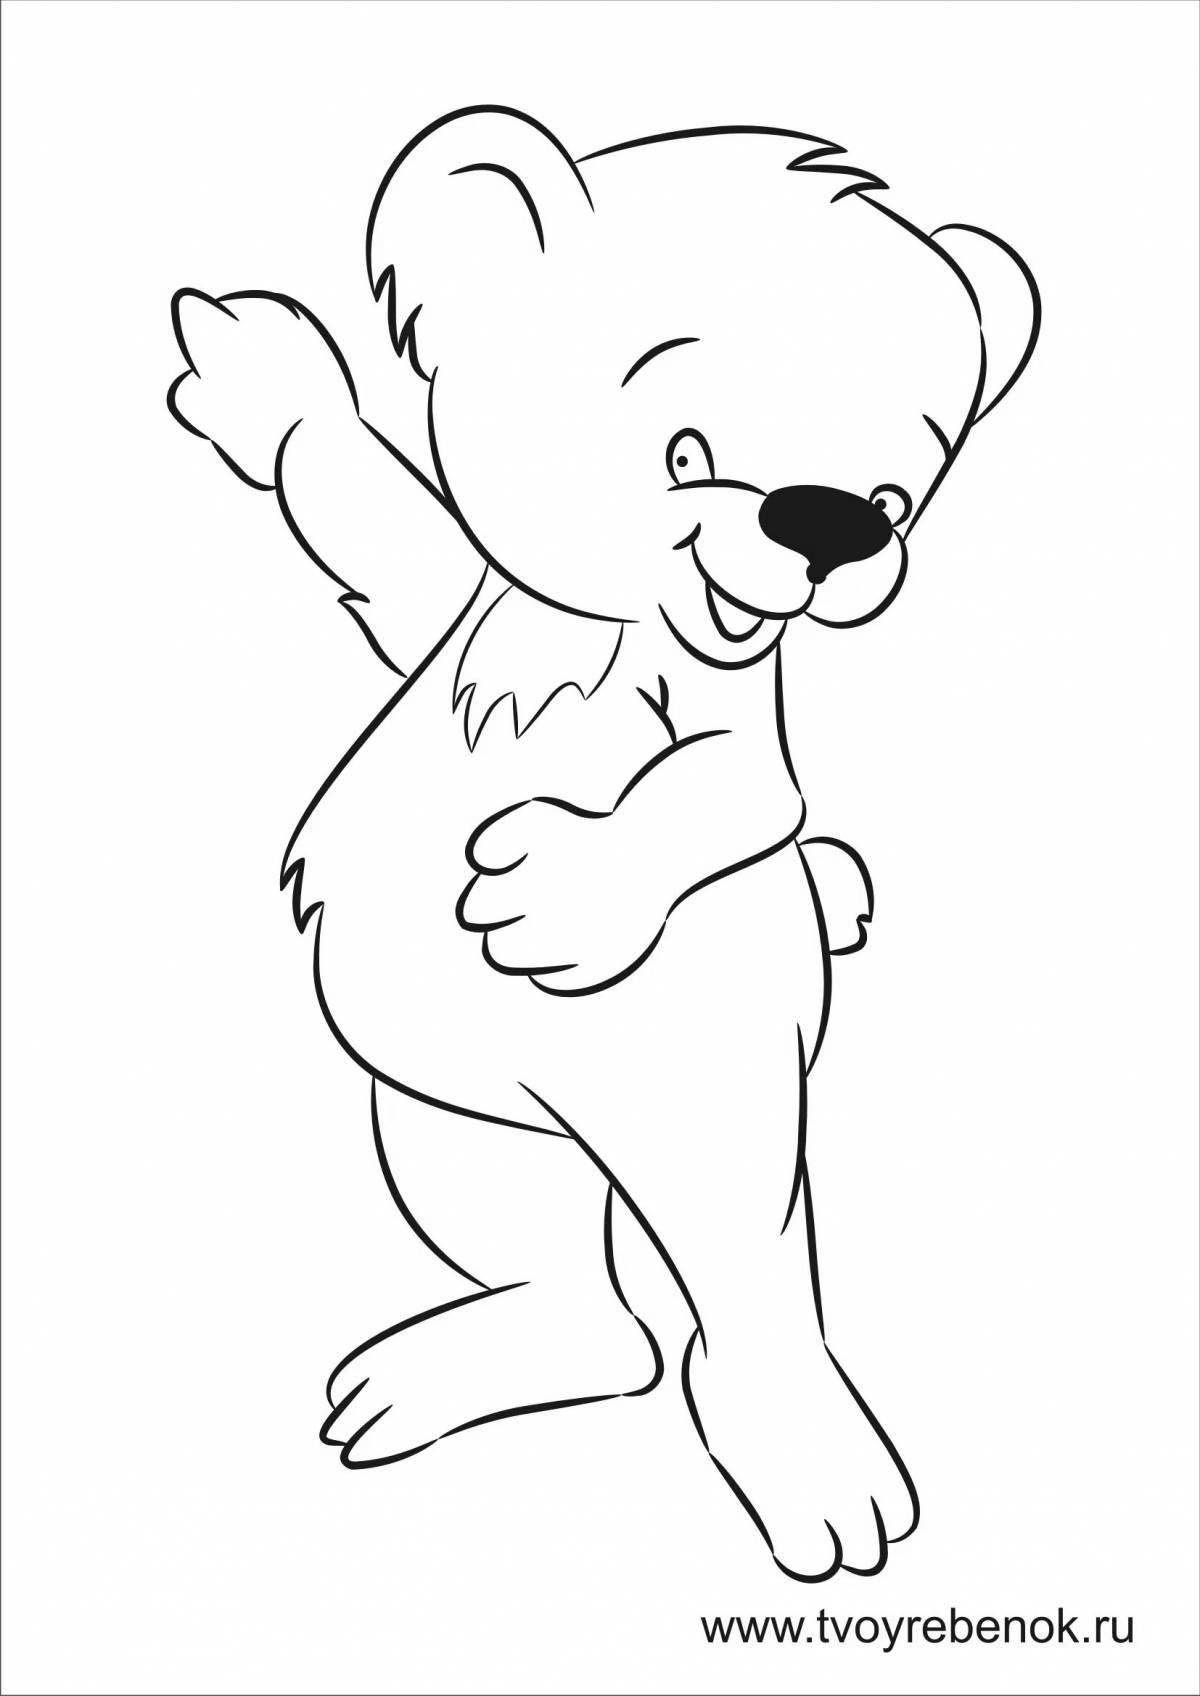 Coloring teddy bear in baby pants